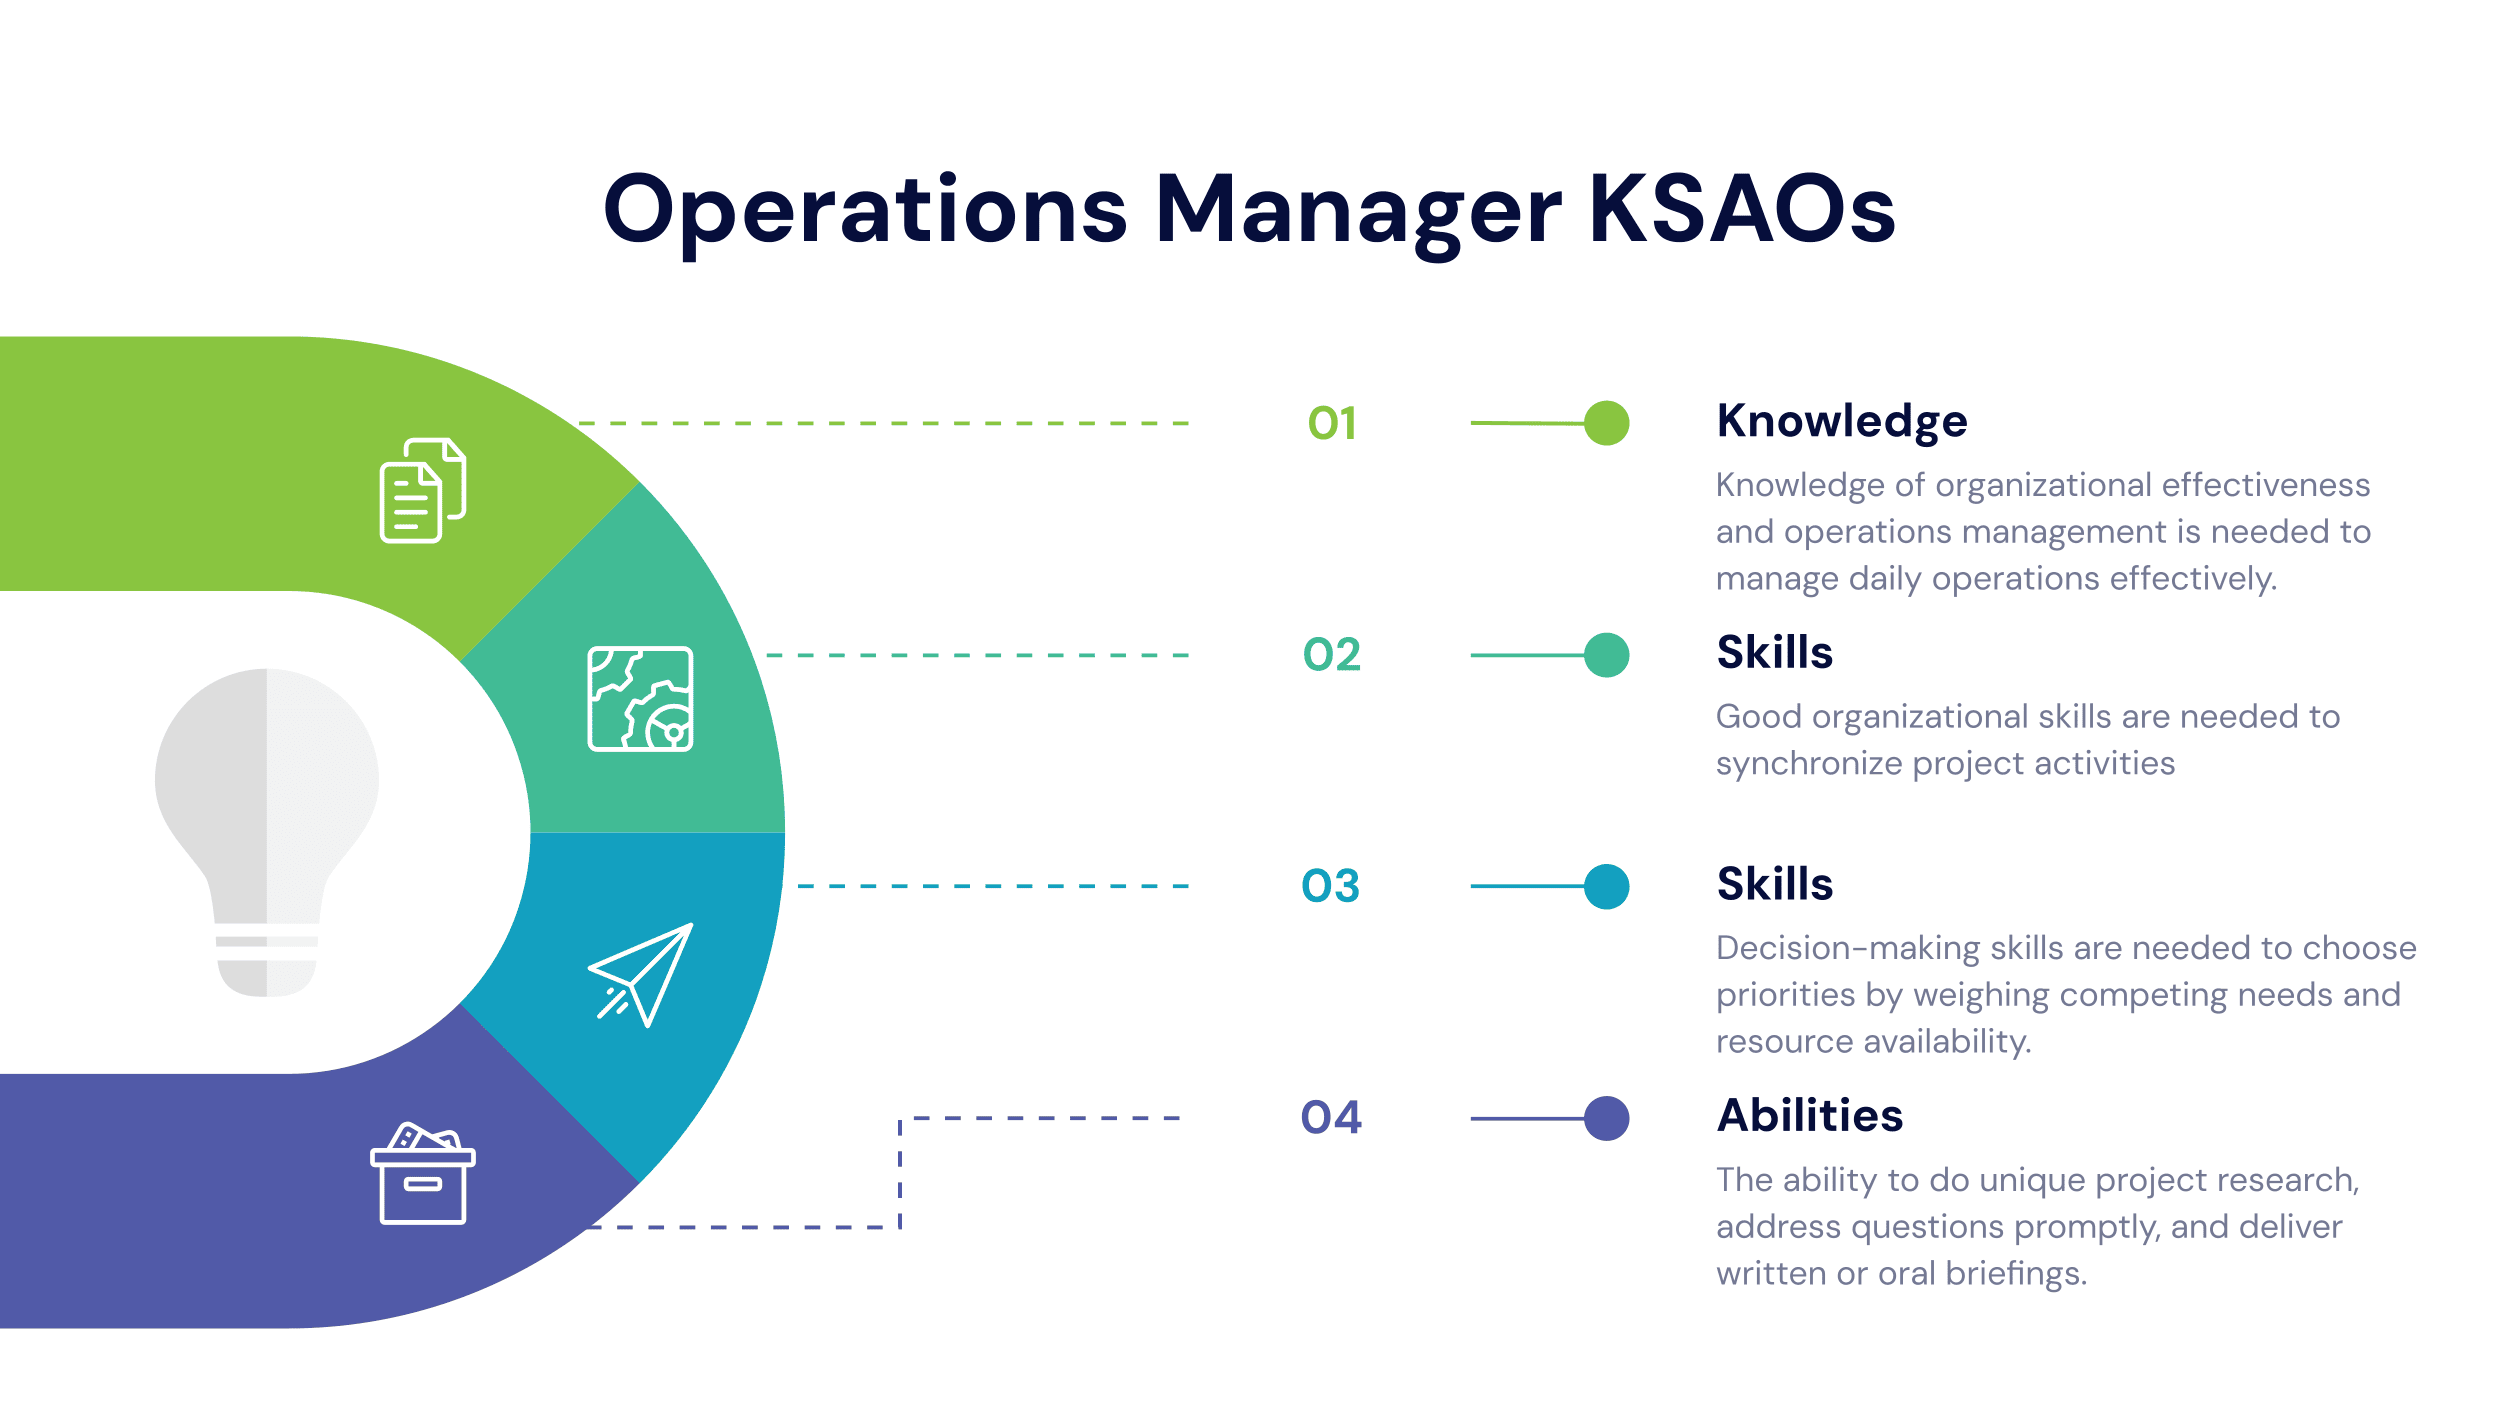 Operations Manager Job Description